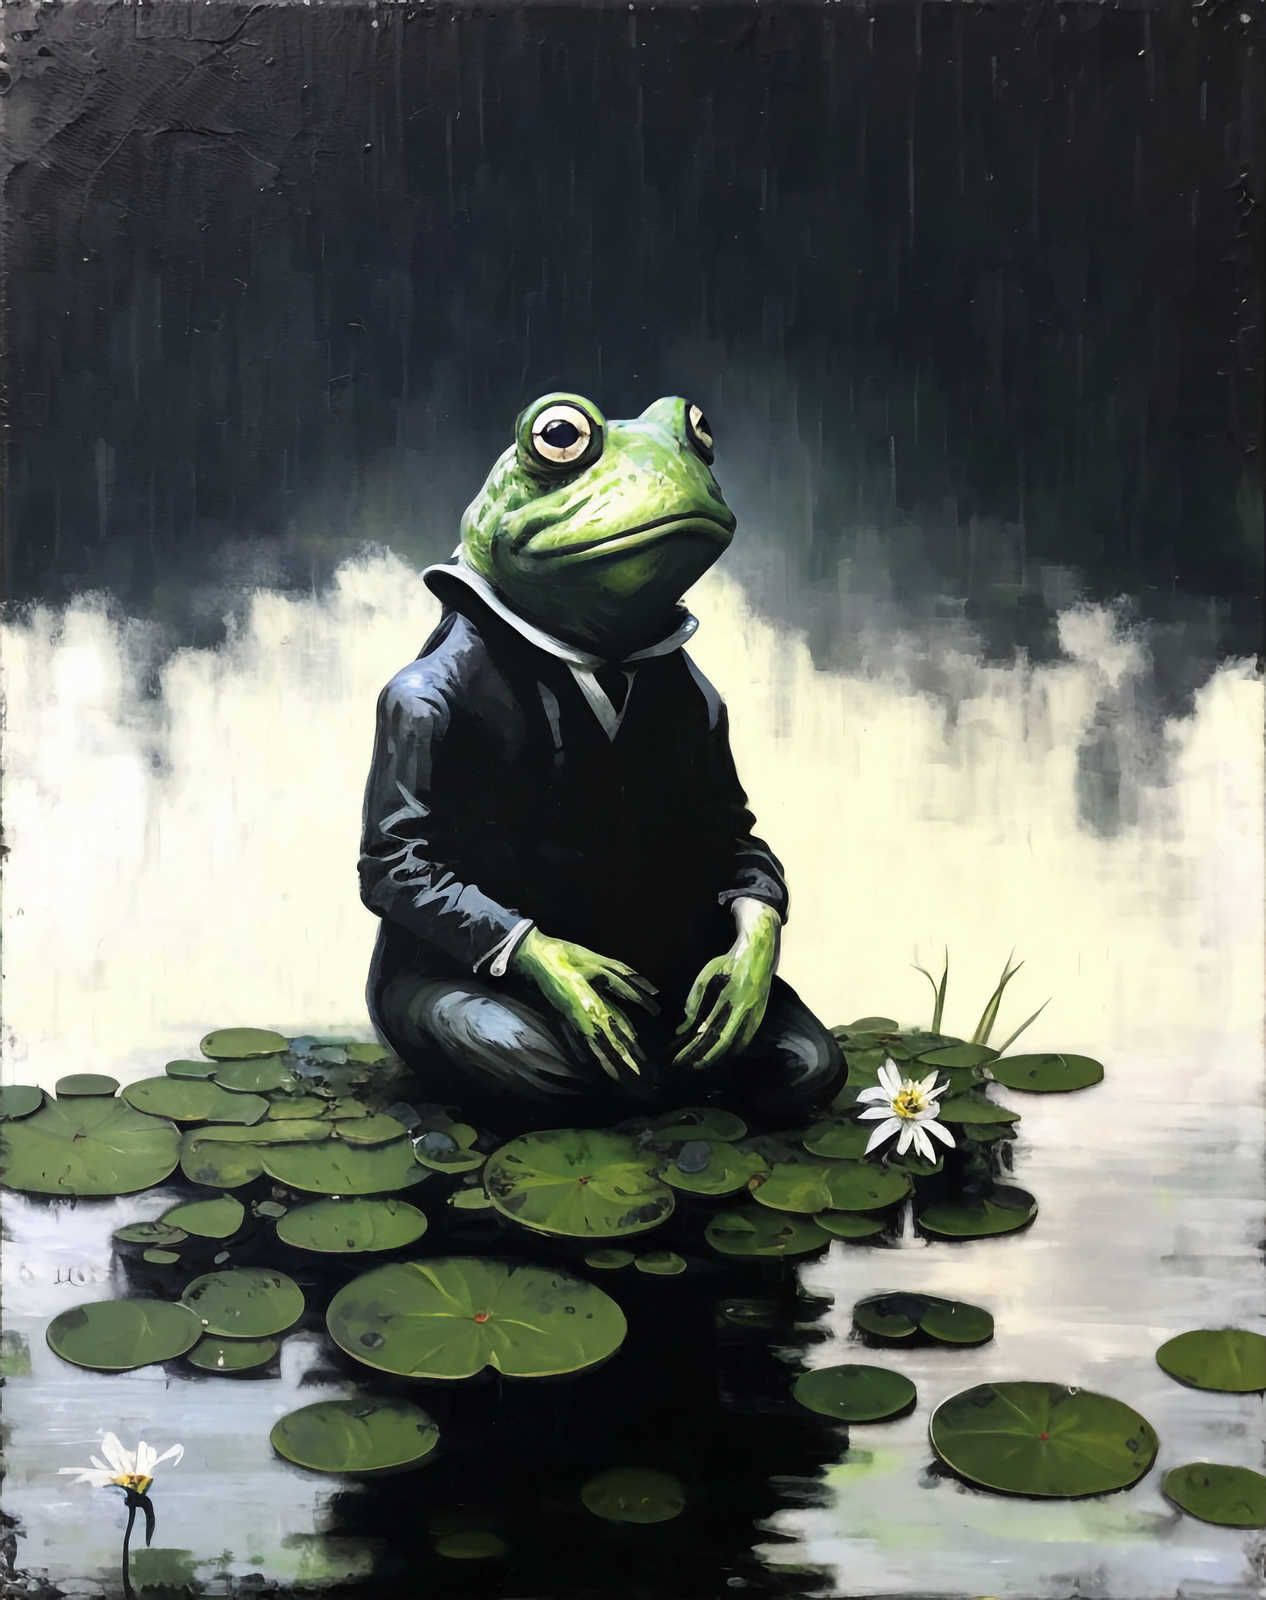             KI-Leinwandbild »chilling frog« – 60 cm x 90 cm
        